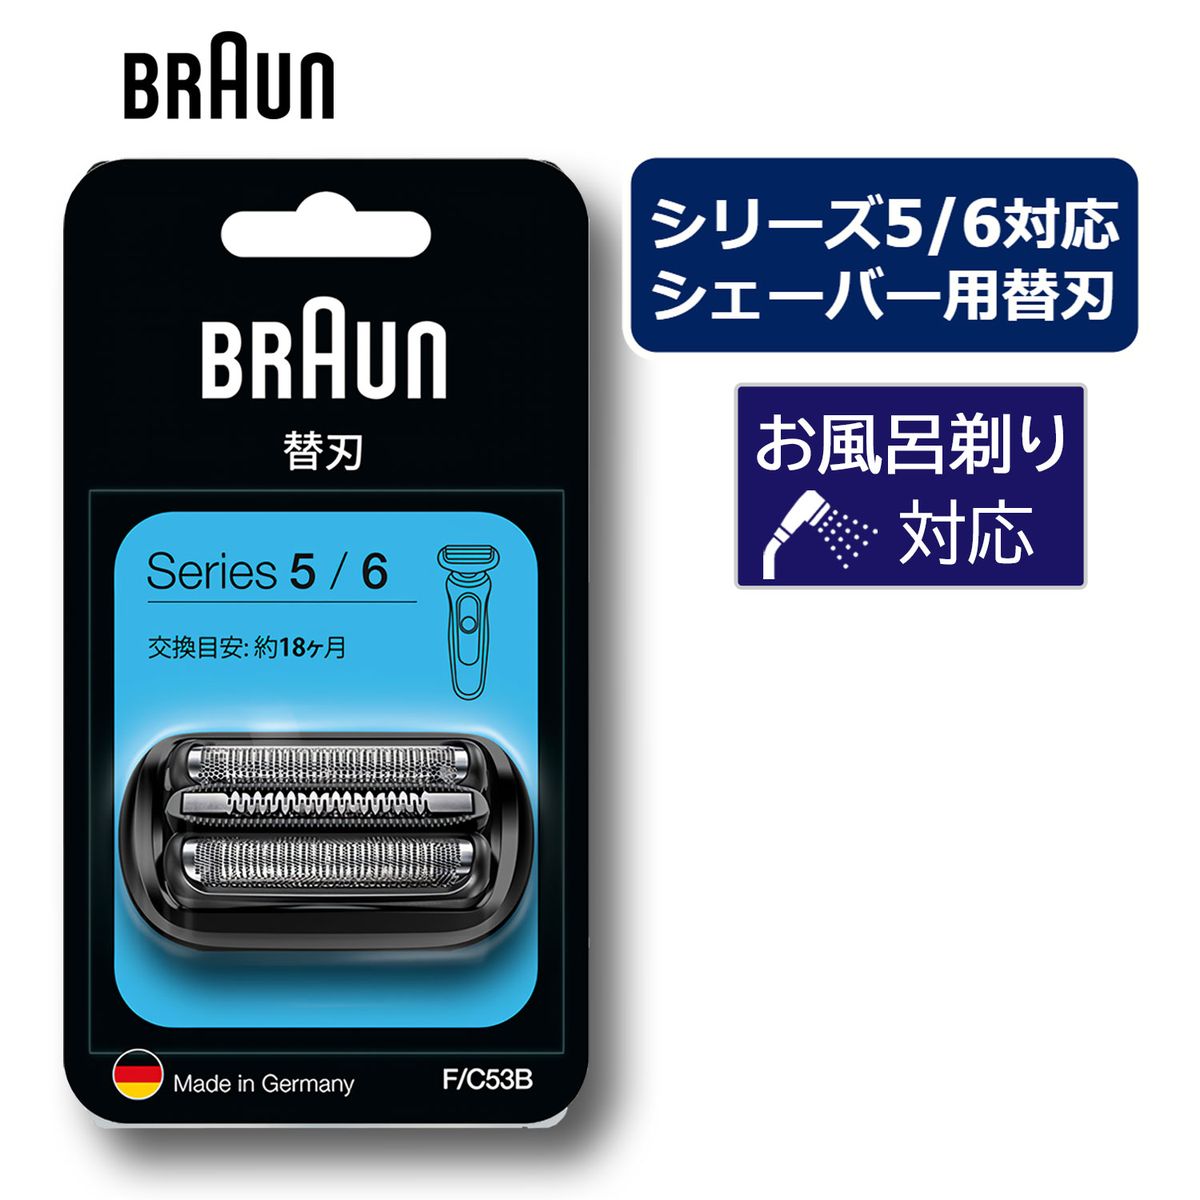 BRAUN シェーバー シリーズ5 シリーズ6 網刃 内刃一体型カセット